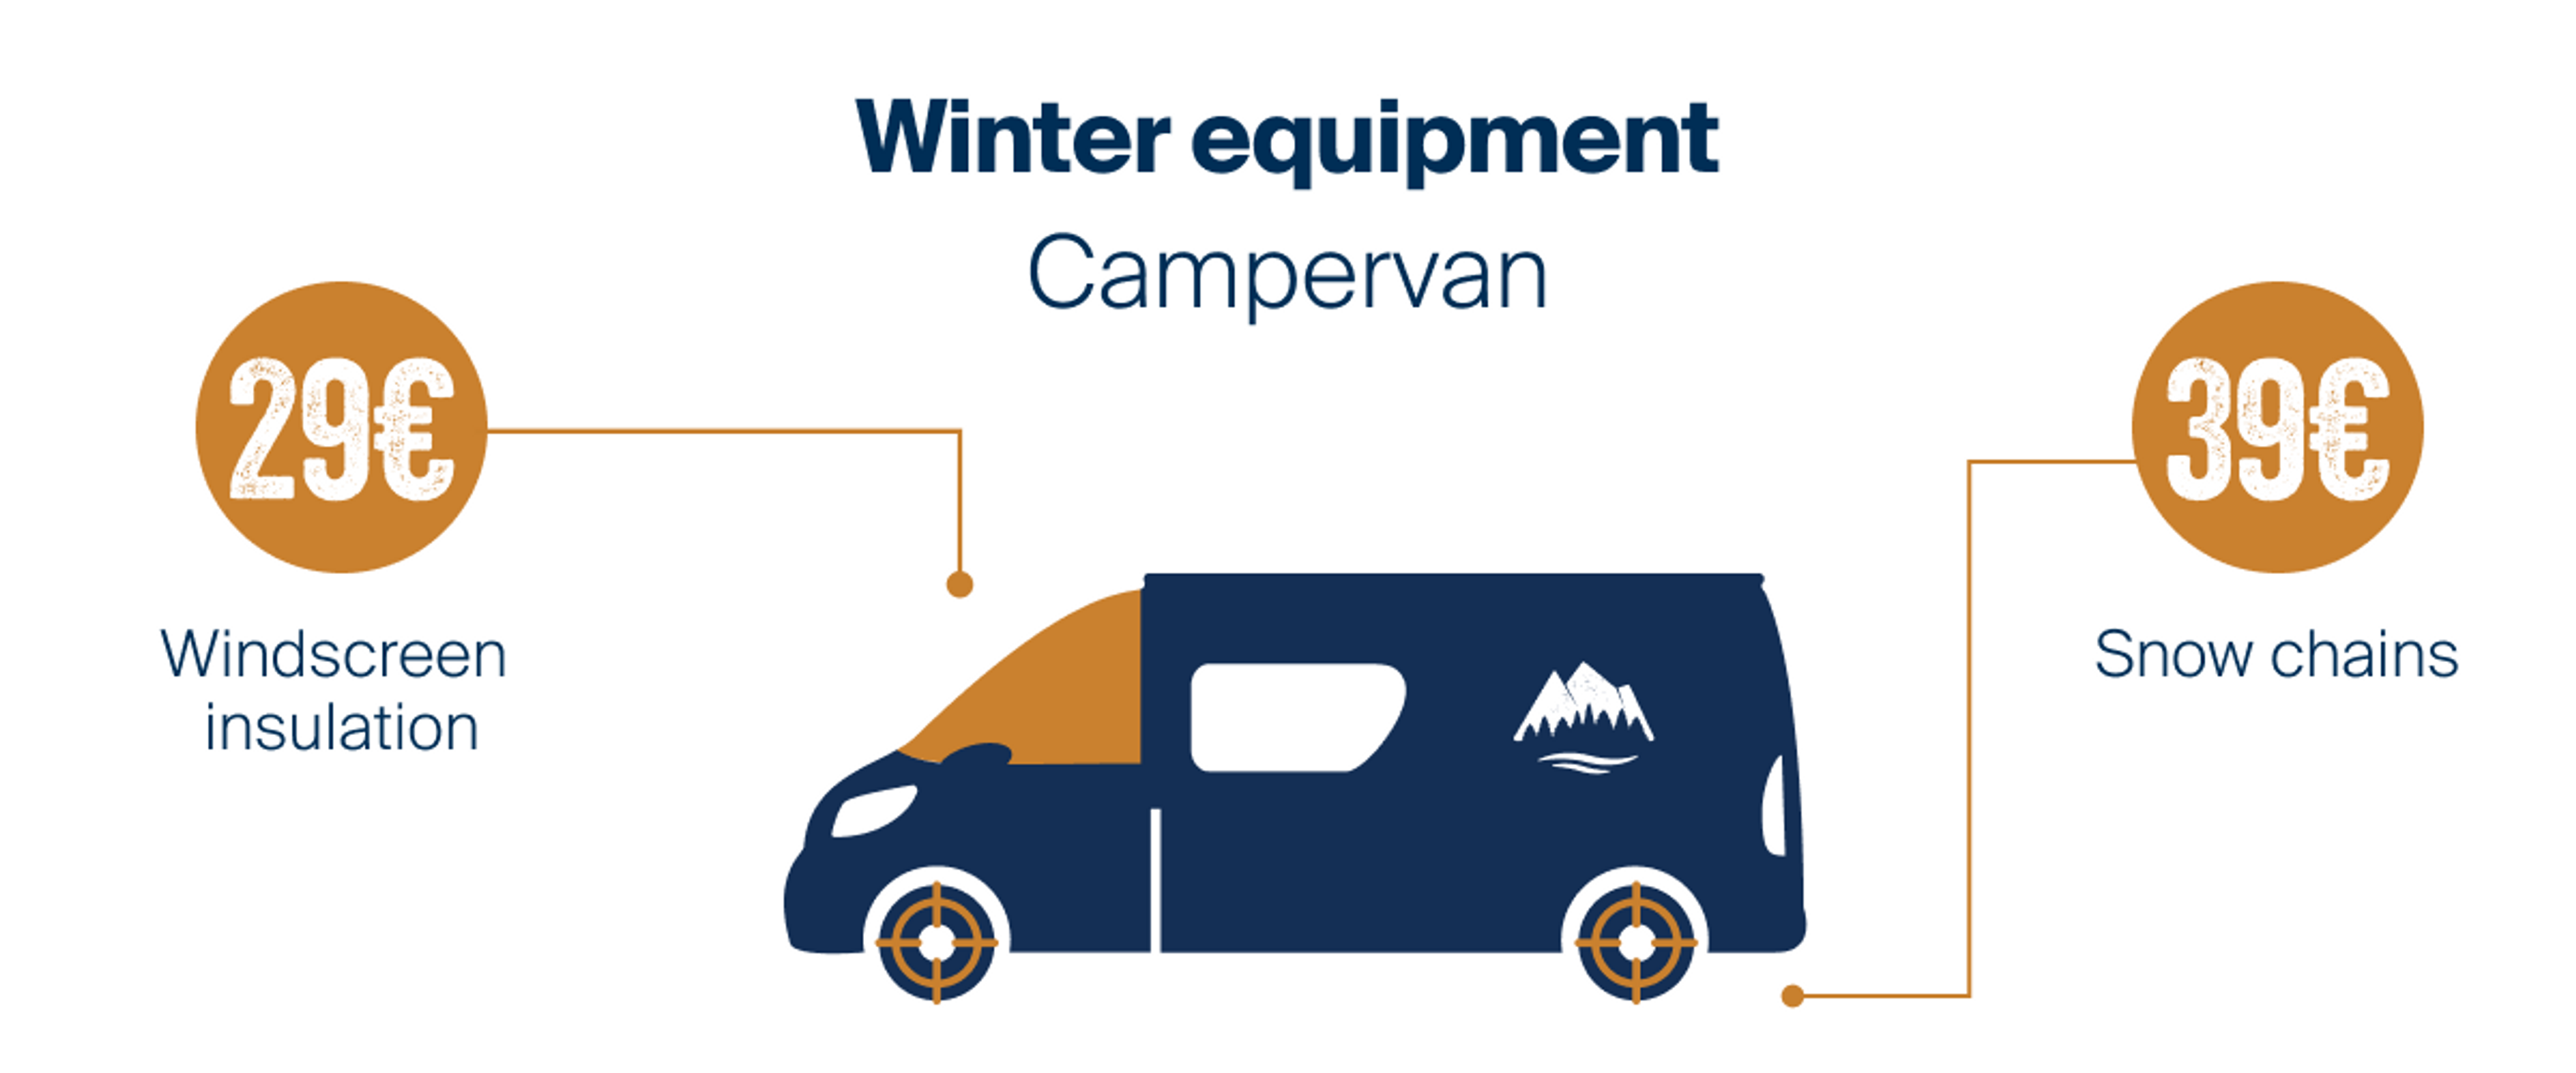 Winterequipment Campervan